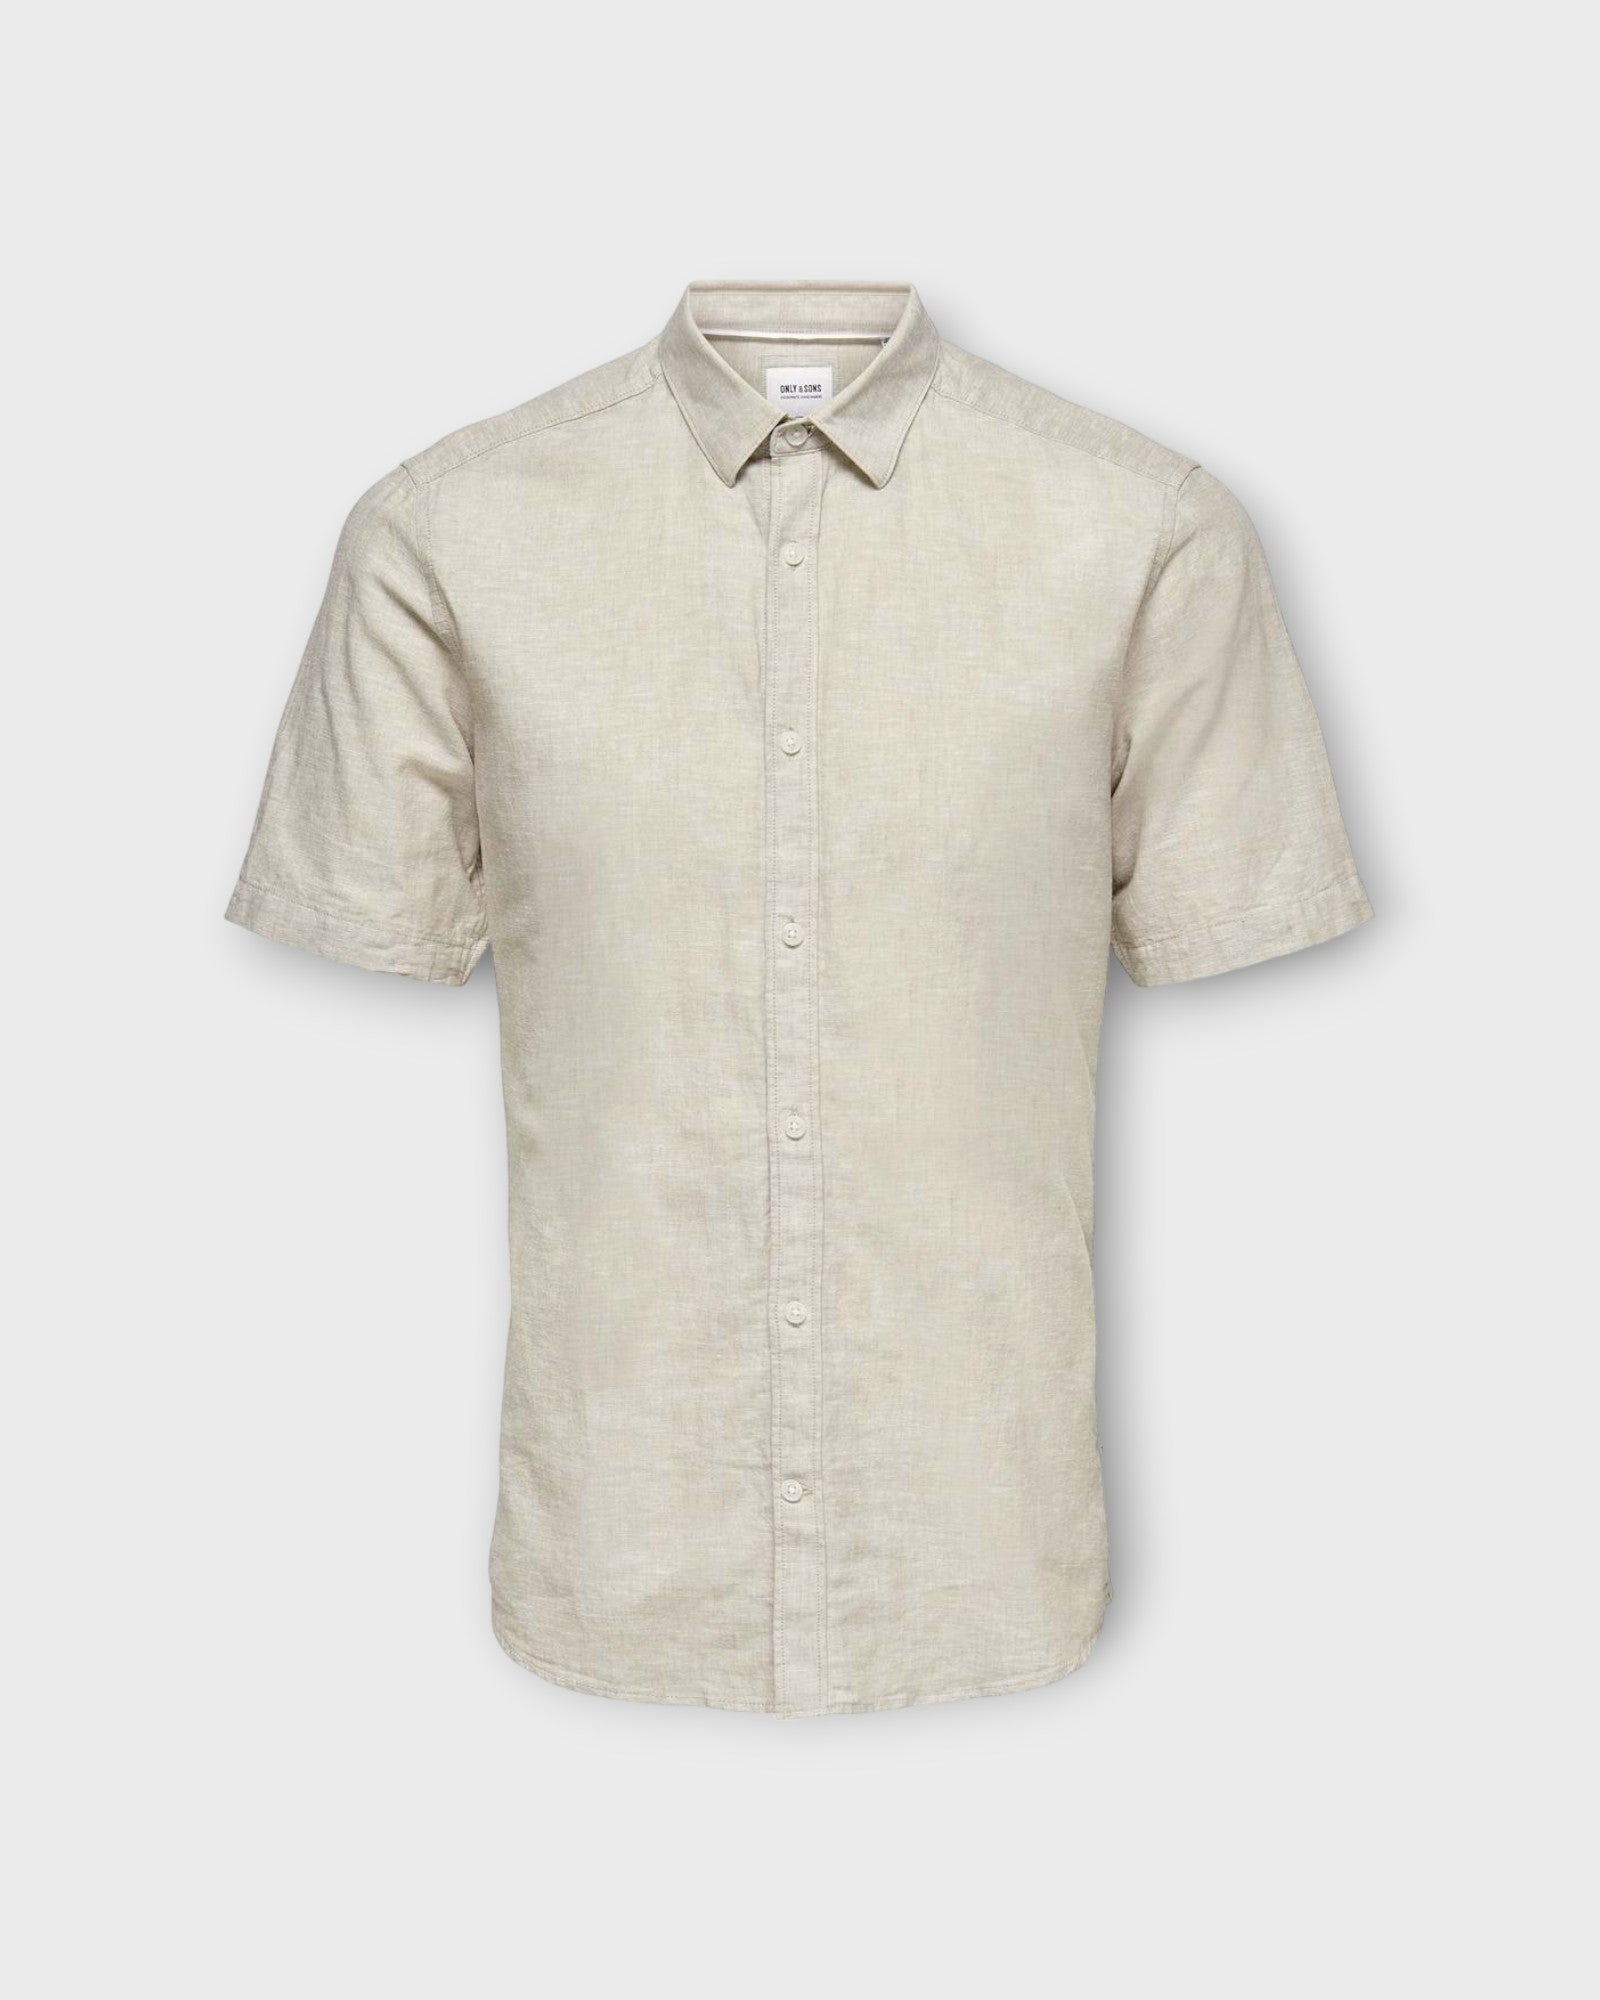 Caiden SS Solid Linen Shirt Chinchilla fra Only and Sons. Kortærmet  sandfarvet hørskjorte til mænd. Her set forfra.